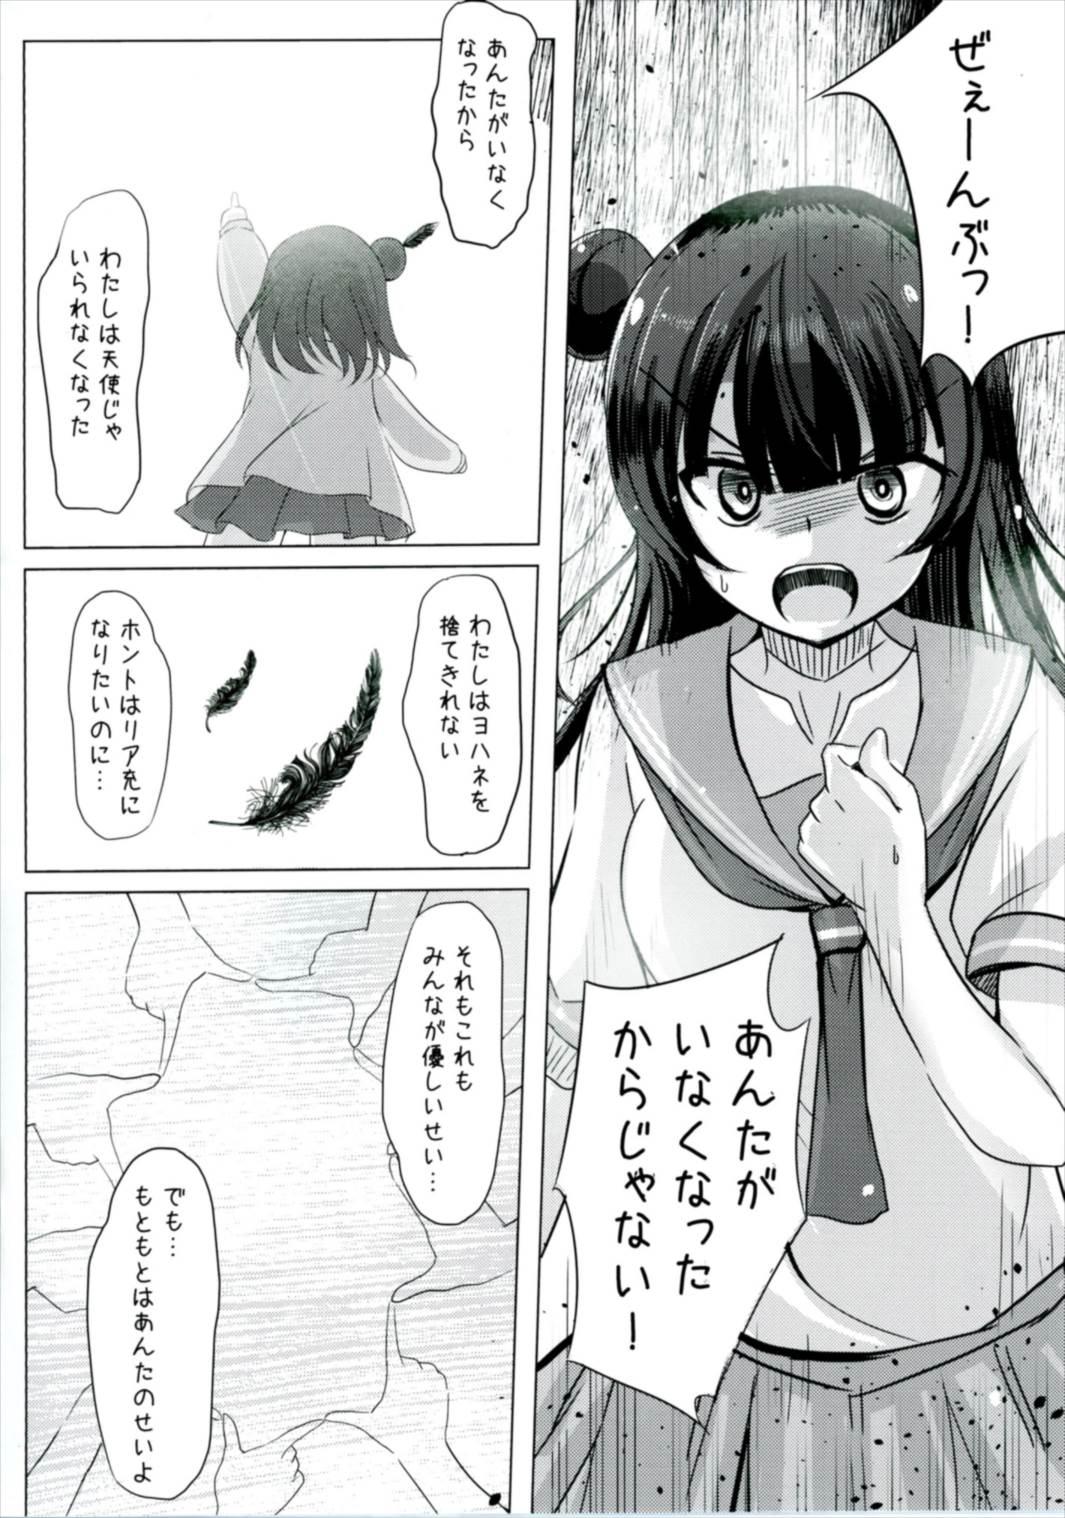 Pigtails Doushiyou mo Nai Maru ni Tenshi ga Oritekita - Love live sunshine Hermana - Page 5